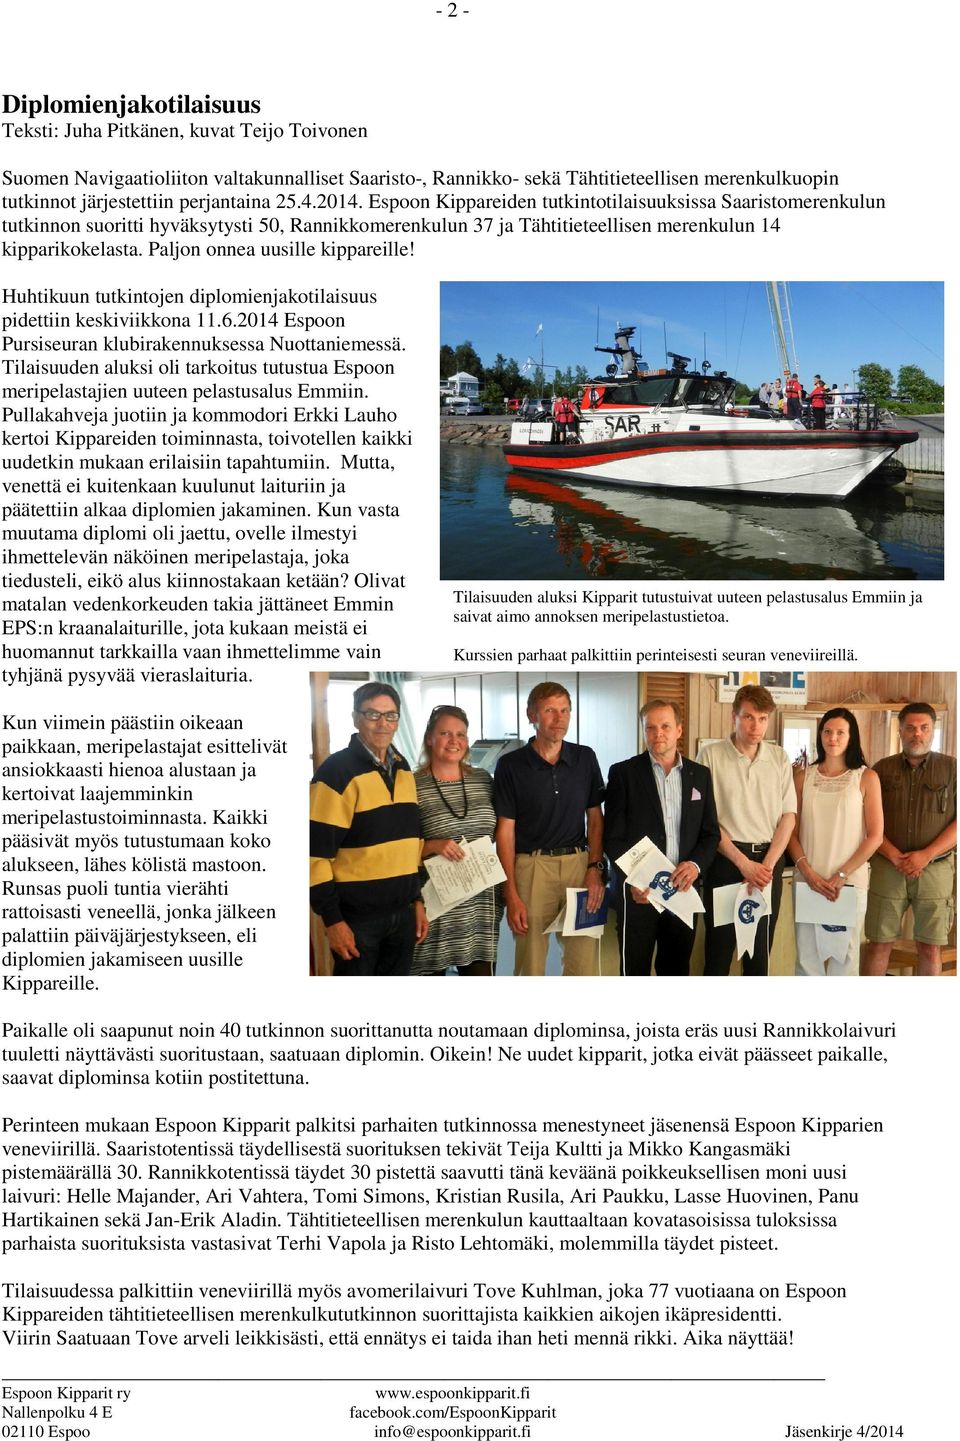 Paljon onnea uusille kippareille! Huhtikuun tutkintojen diplomienjakotilaisuus pidettiin keskiviikkona 11.6.2014 Espoon Pursiseuran klubirakennuksessa Nuottaniemessä.